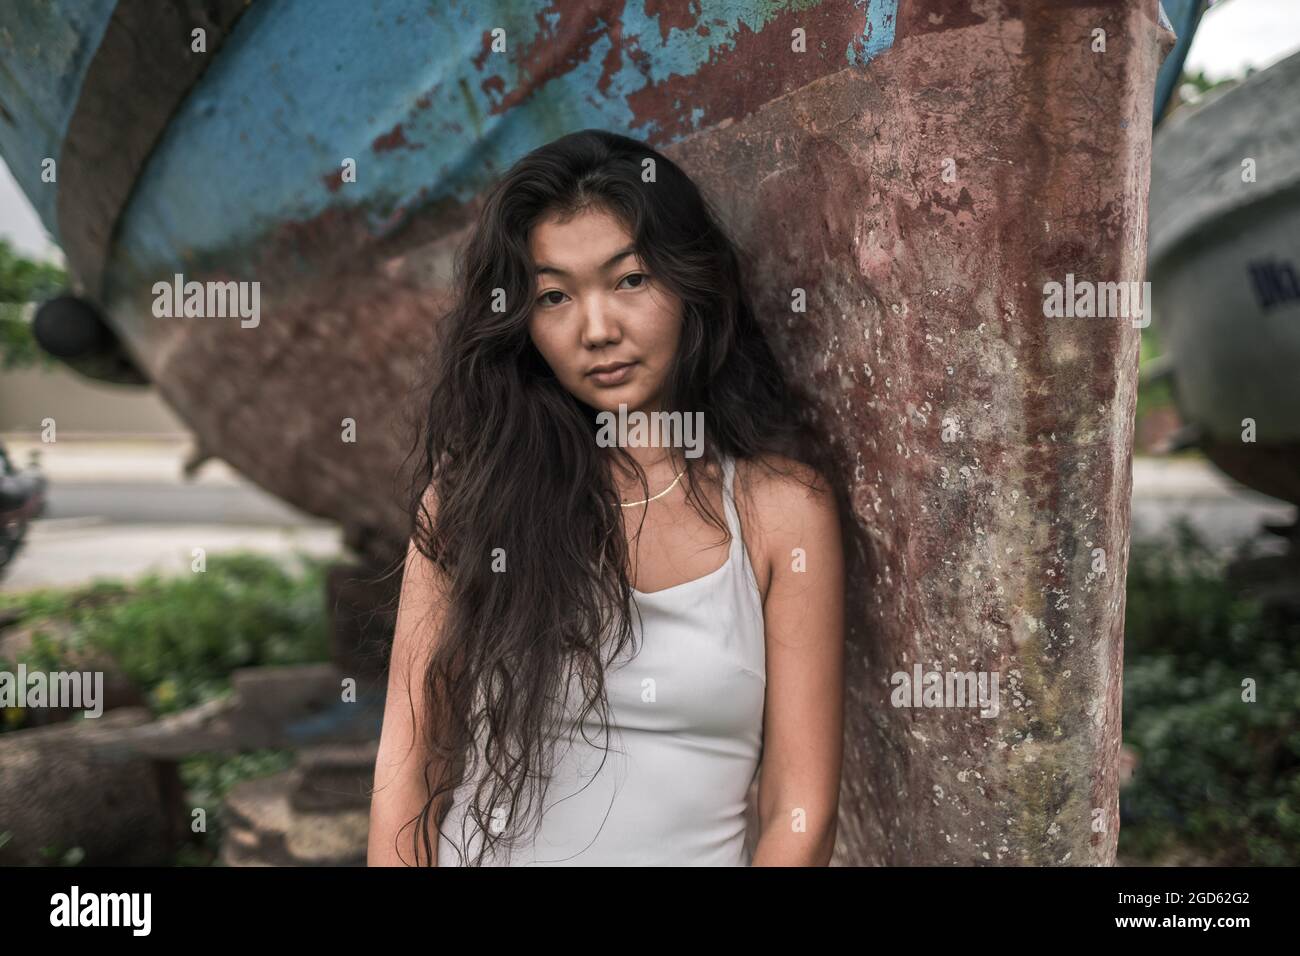 Portrait de la belle jeune femme asiatique en robe blanche debout près du vieux navire. Cheveux longs et bouclés noirs naturels. Penser face romantique. Banque D'Images